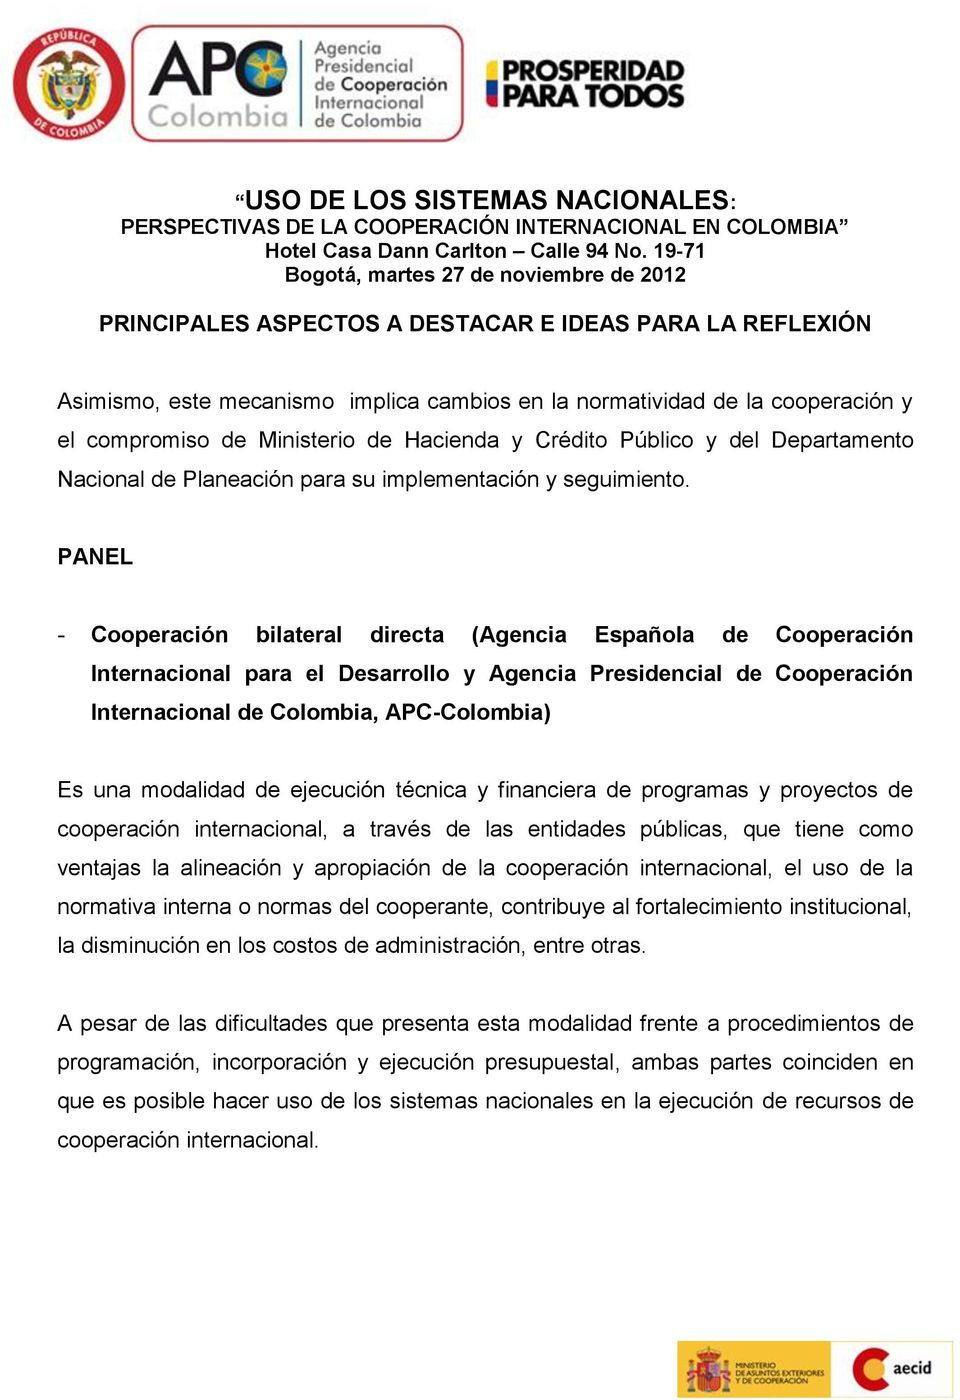 - Cooperación bilateral directa (Agencia Española de Cooperación Internacional para el Desarrollo y Agencia Presidencial de Cooperación Internacional de Colombia, APC-Colombia) Es una modalidad de